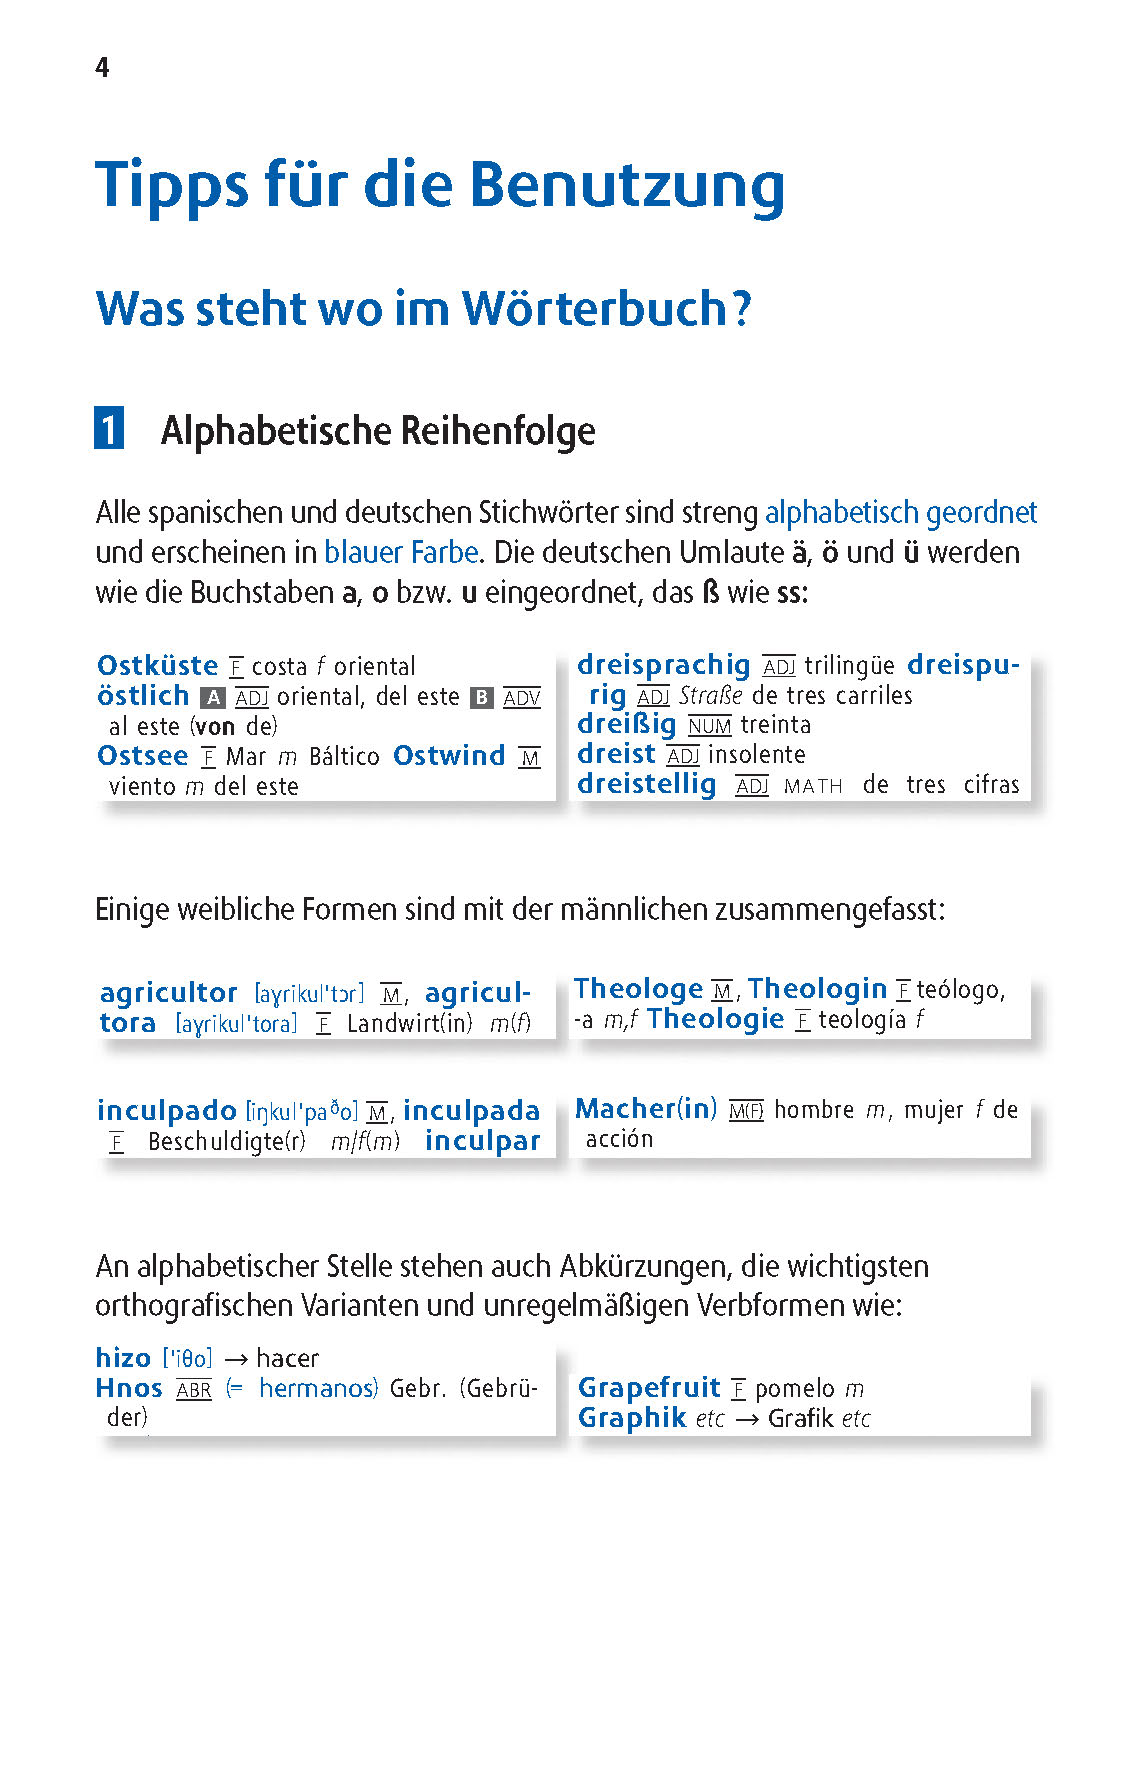 Langenscheidt Schulwörterbuch Spanisch